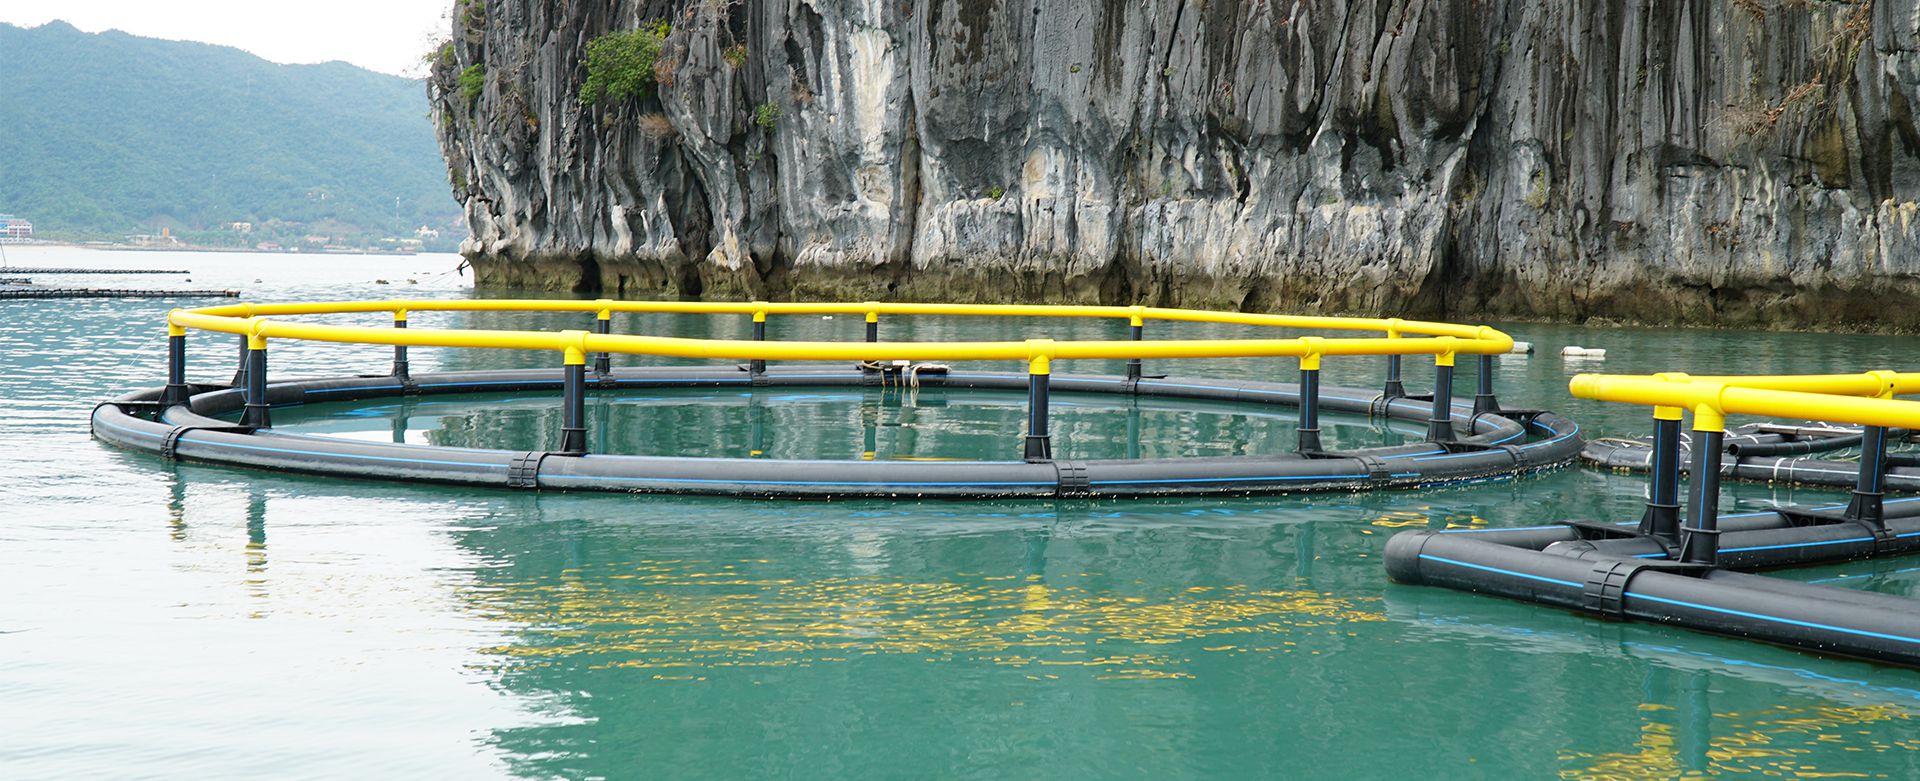 Lồng nhựa HDPE nuôi cá, nuôi trồng thủy sản hiện nay được ứng dụng rất rộng rãi tại các tỉnh ven biển